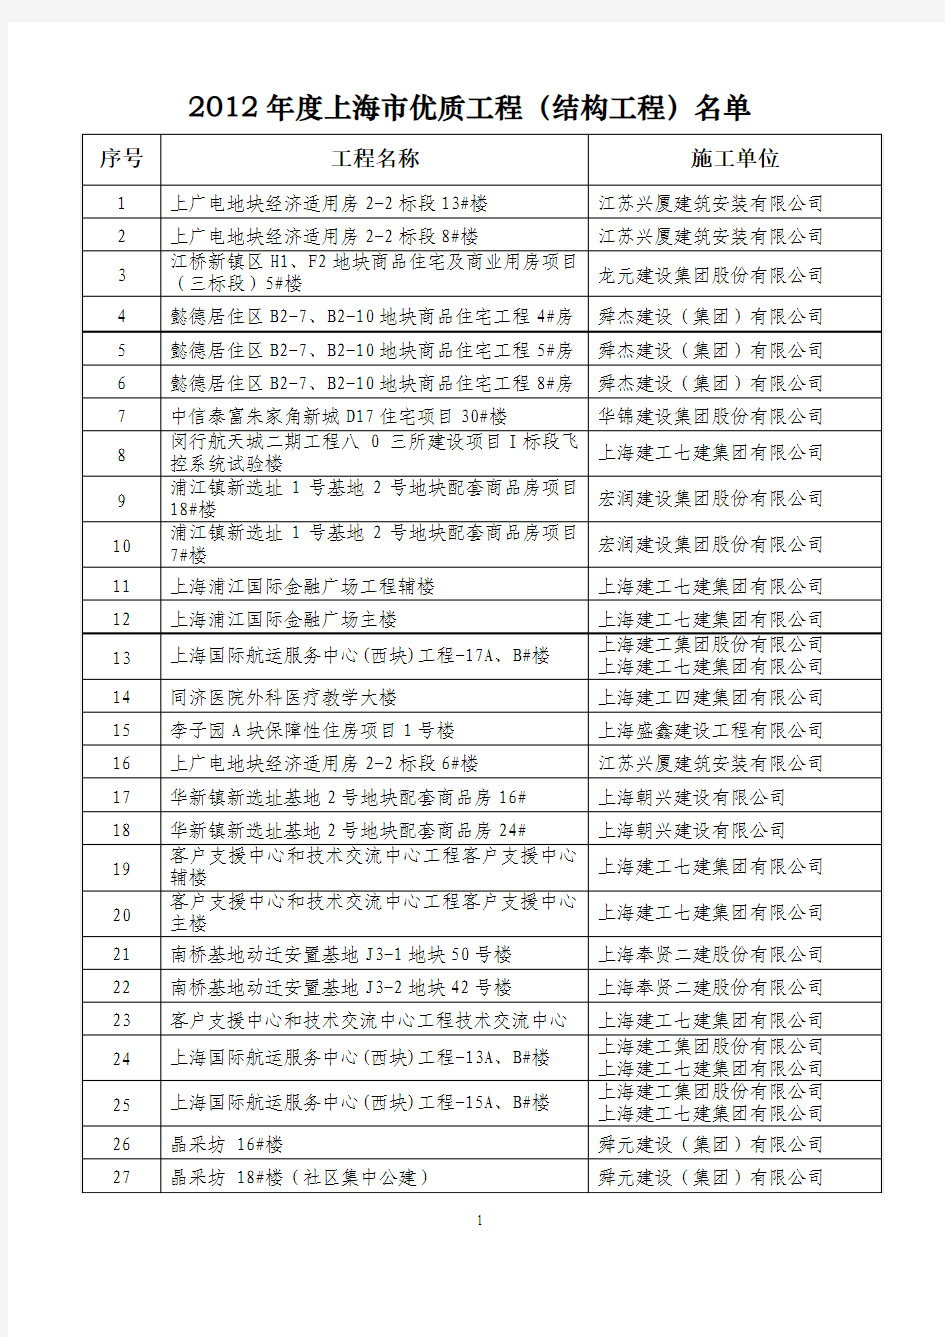 2012年度上海市优质工程(结构工程)名单